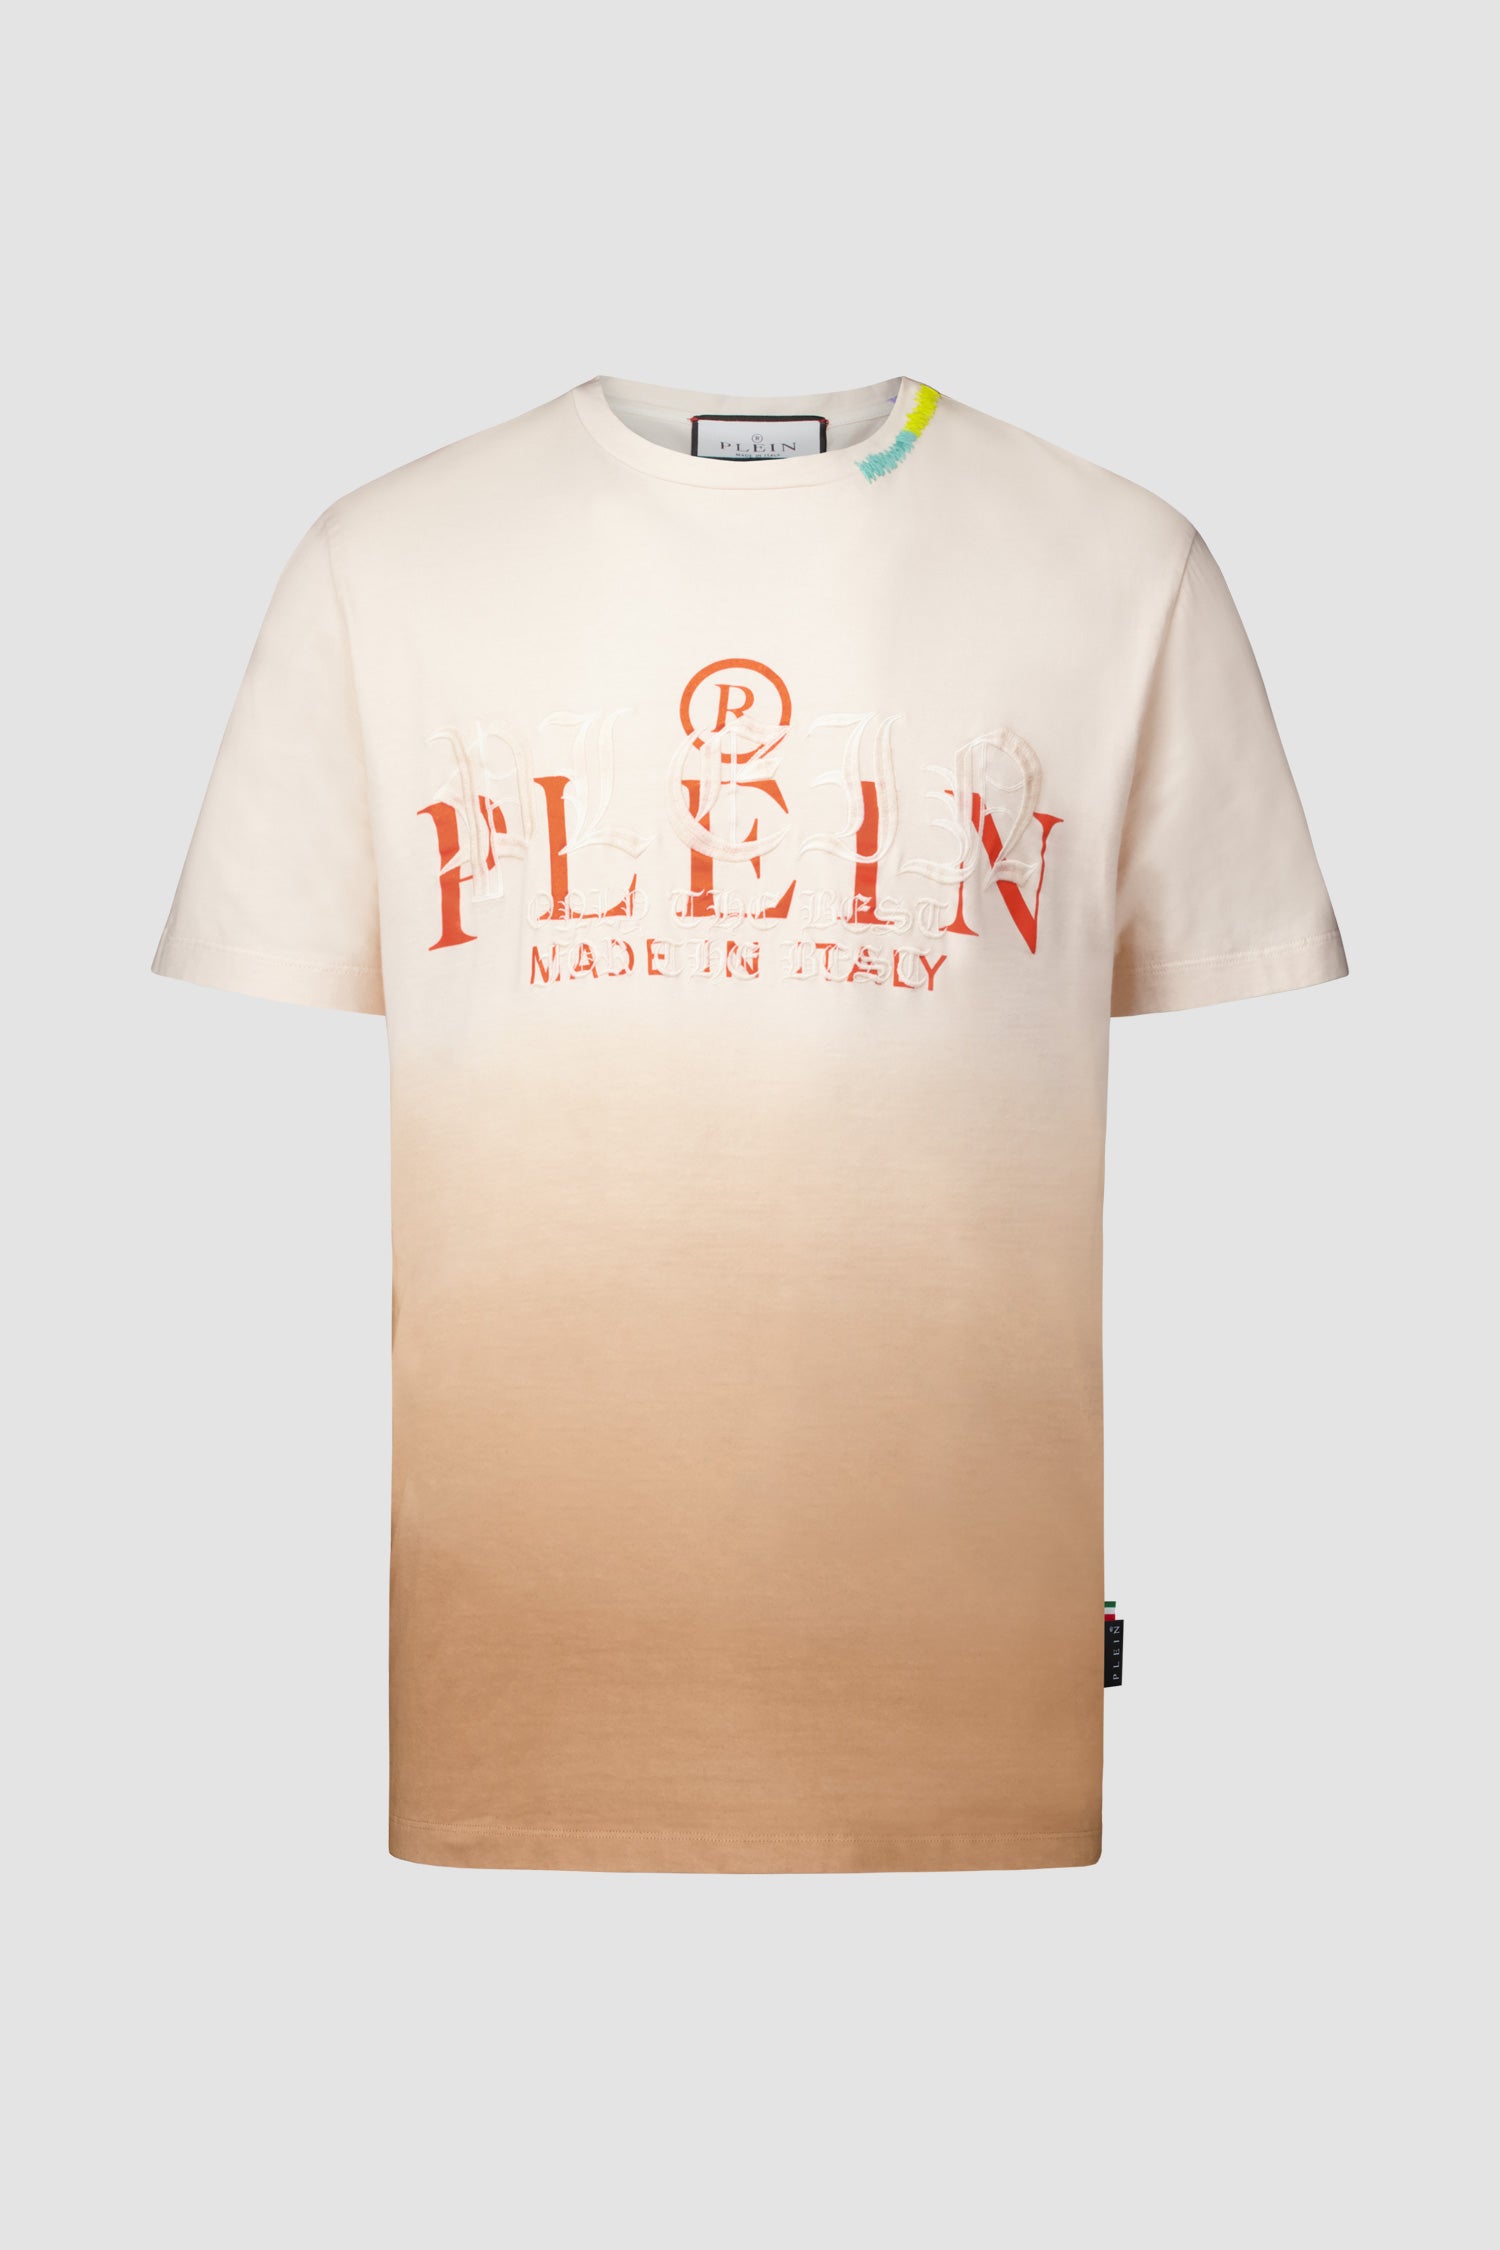 Philipp Plein Beige Round Neck SS Gothic Plein T-Shirt